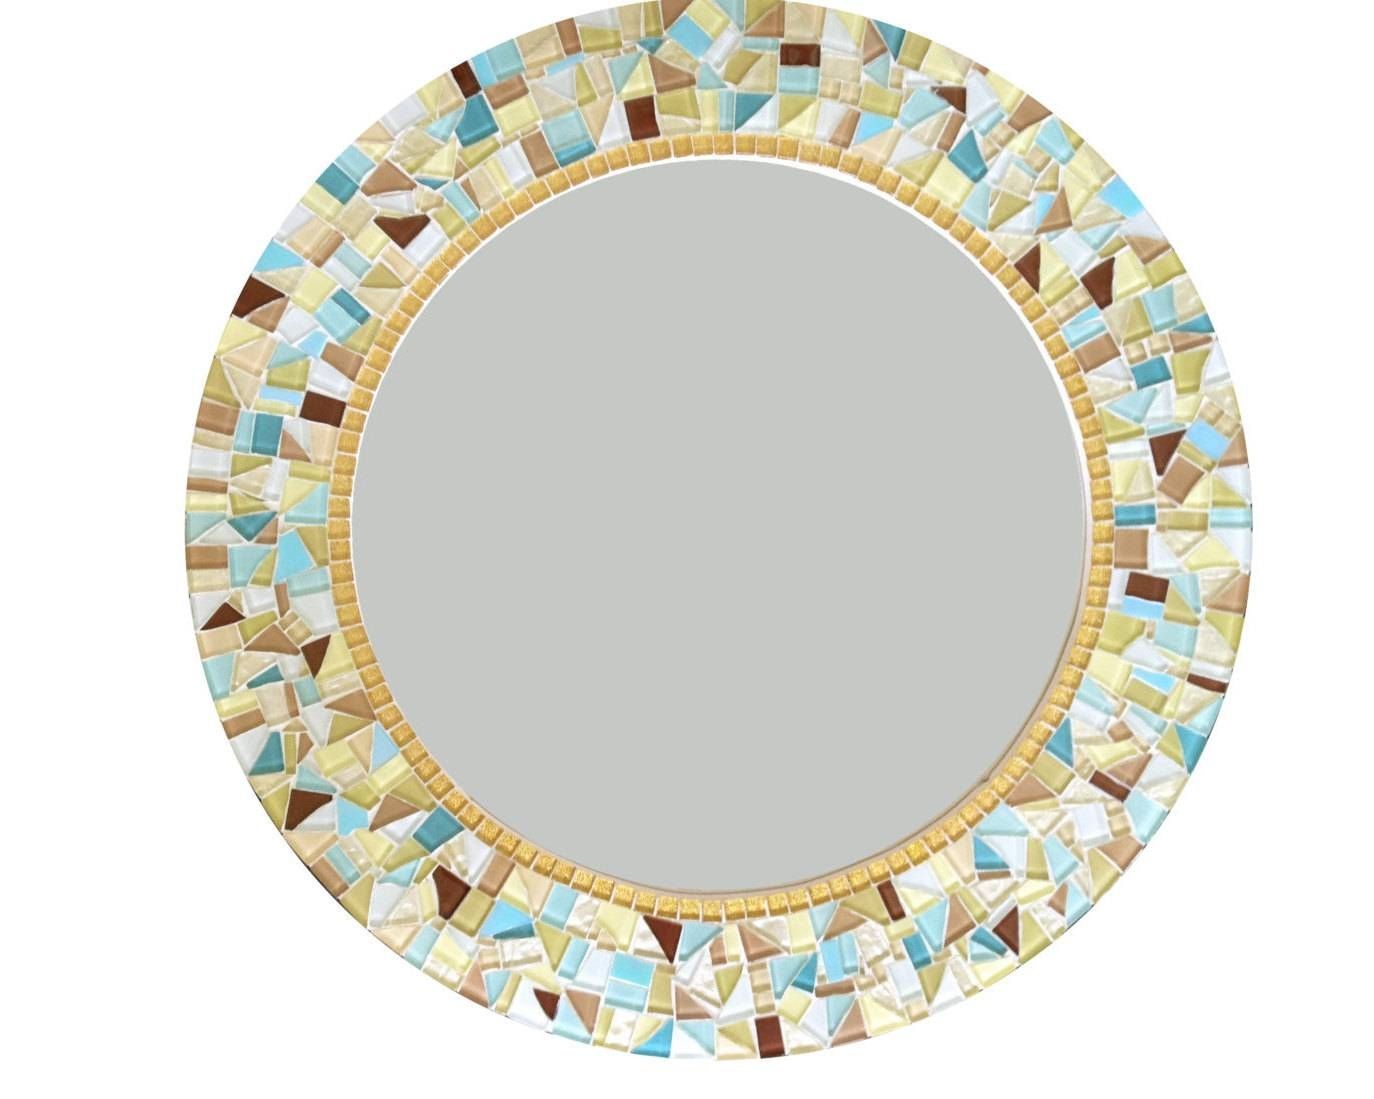 Wall Mirror // Round Mosaic Mirror // Decorative Mirror // Regarding Round Mosaic Wall Mirrors (View 3 of 15)